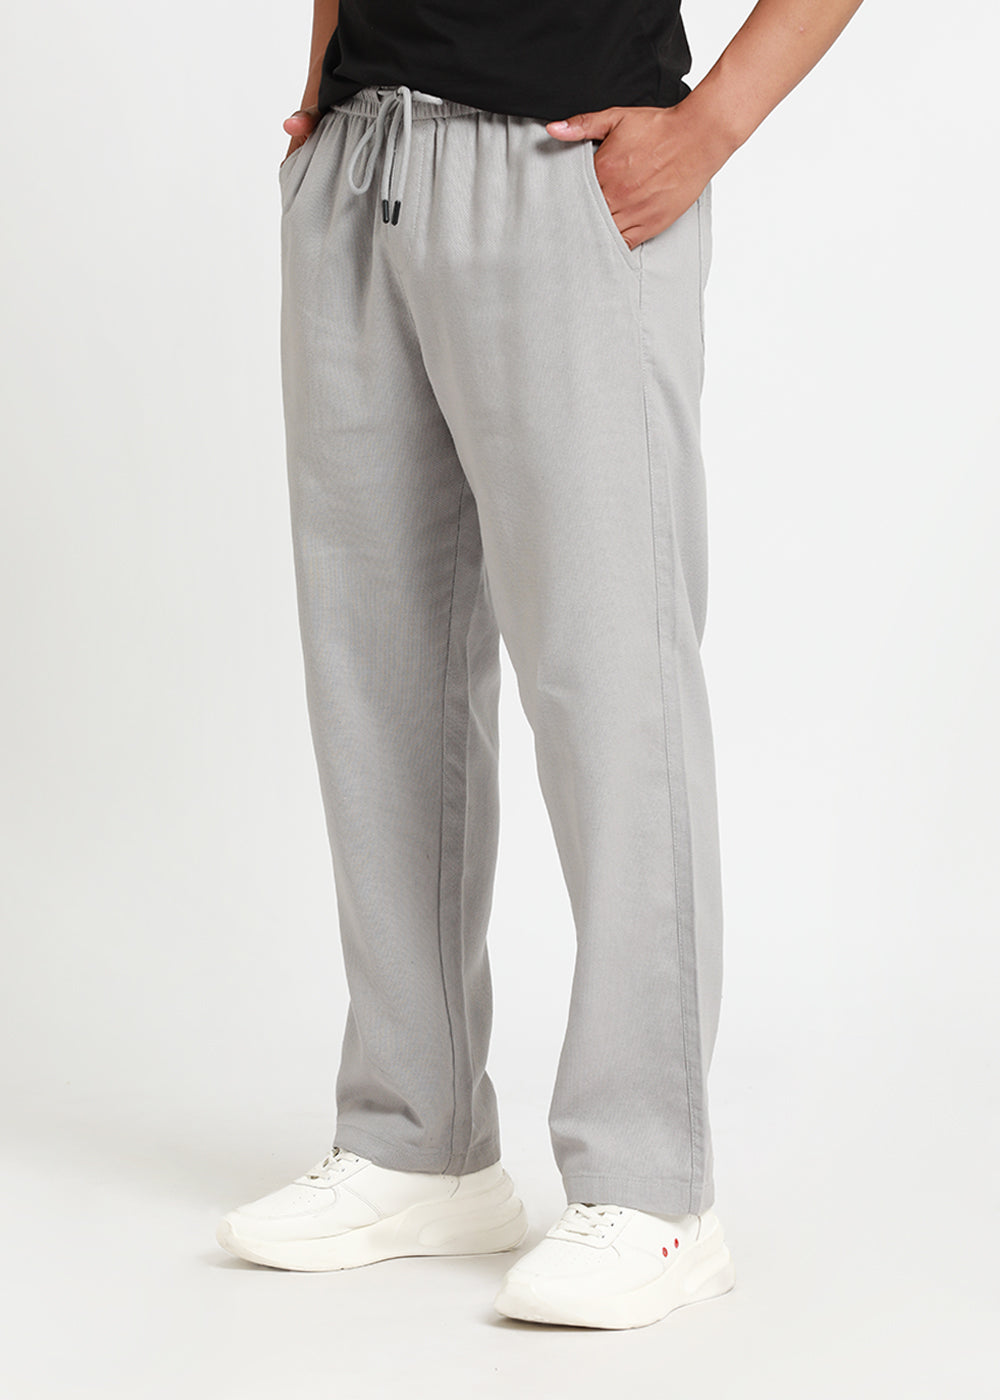 Nimbus Grey Textured Pants